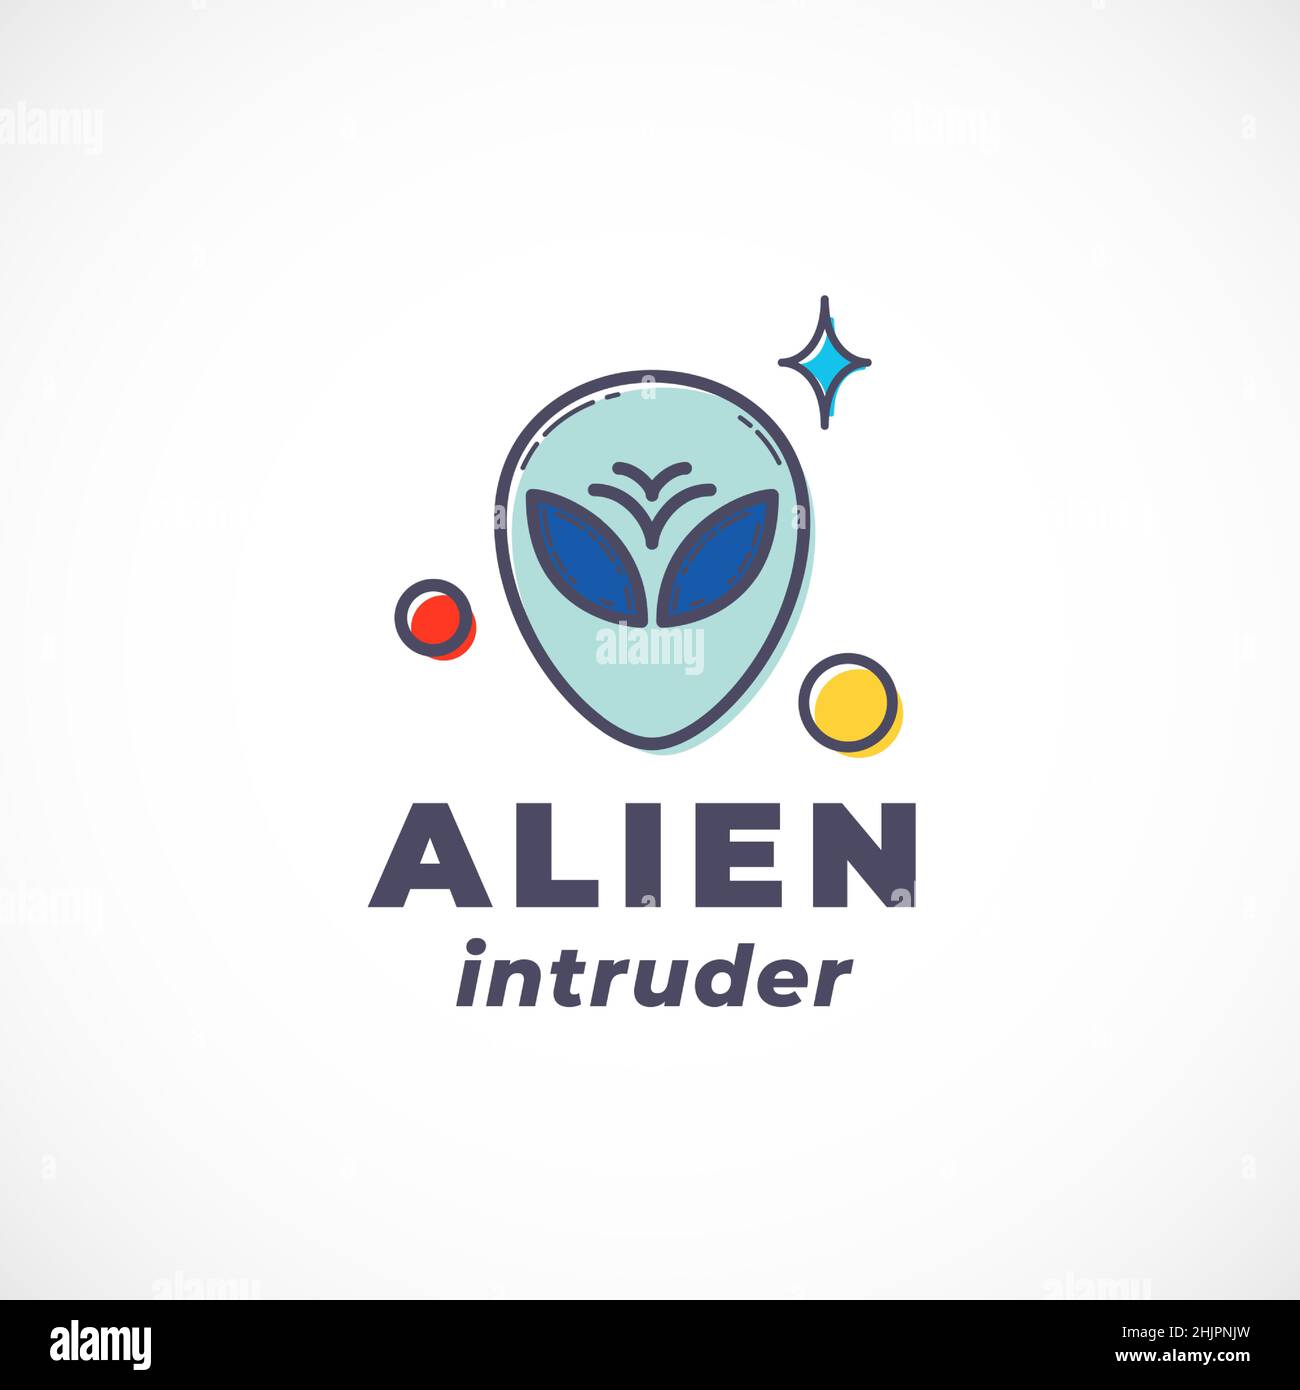 Alien Intruder Abstract Vector Sign, Symbol, Logo Template. Umreißen Sie das extraterrestrische Creature Face Silhouette mit moderner Typografie. Science Fiction Stock Vektor